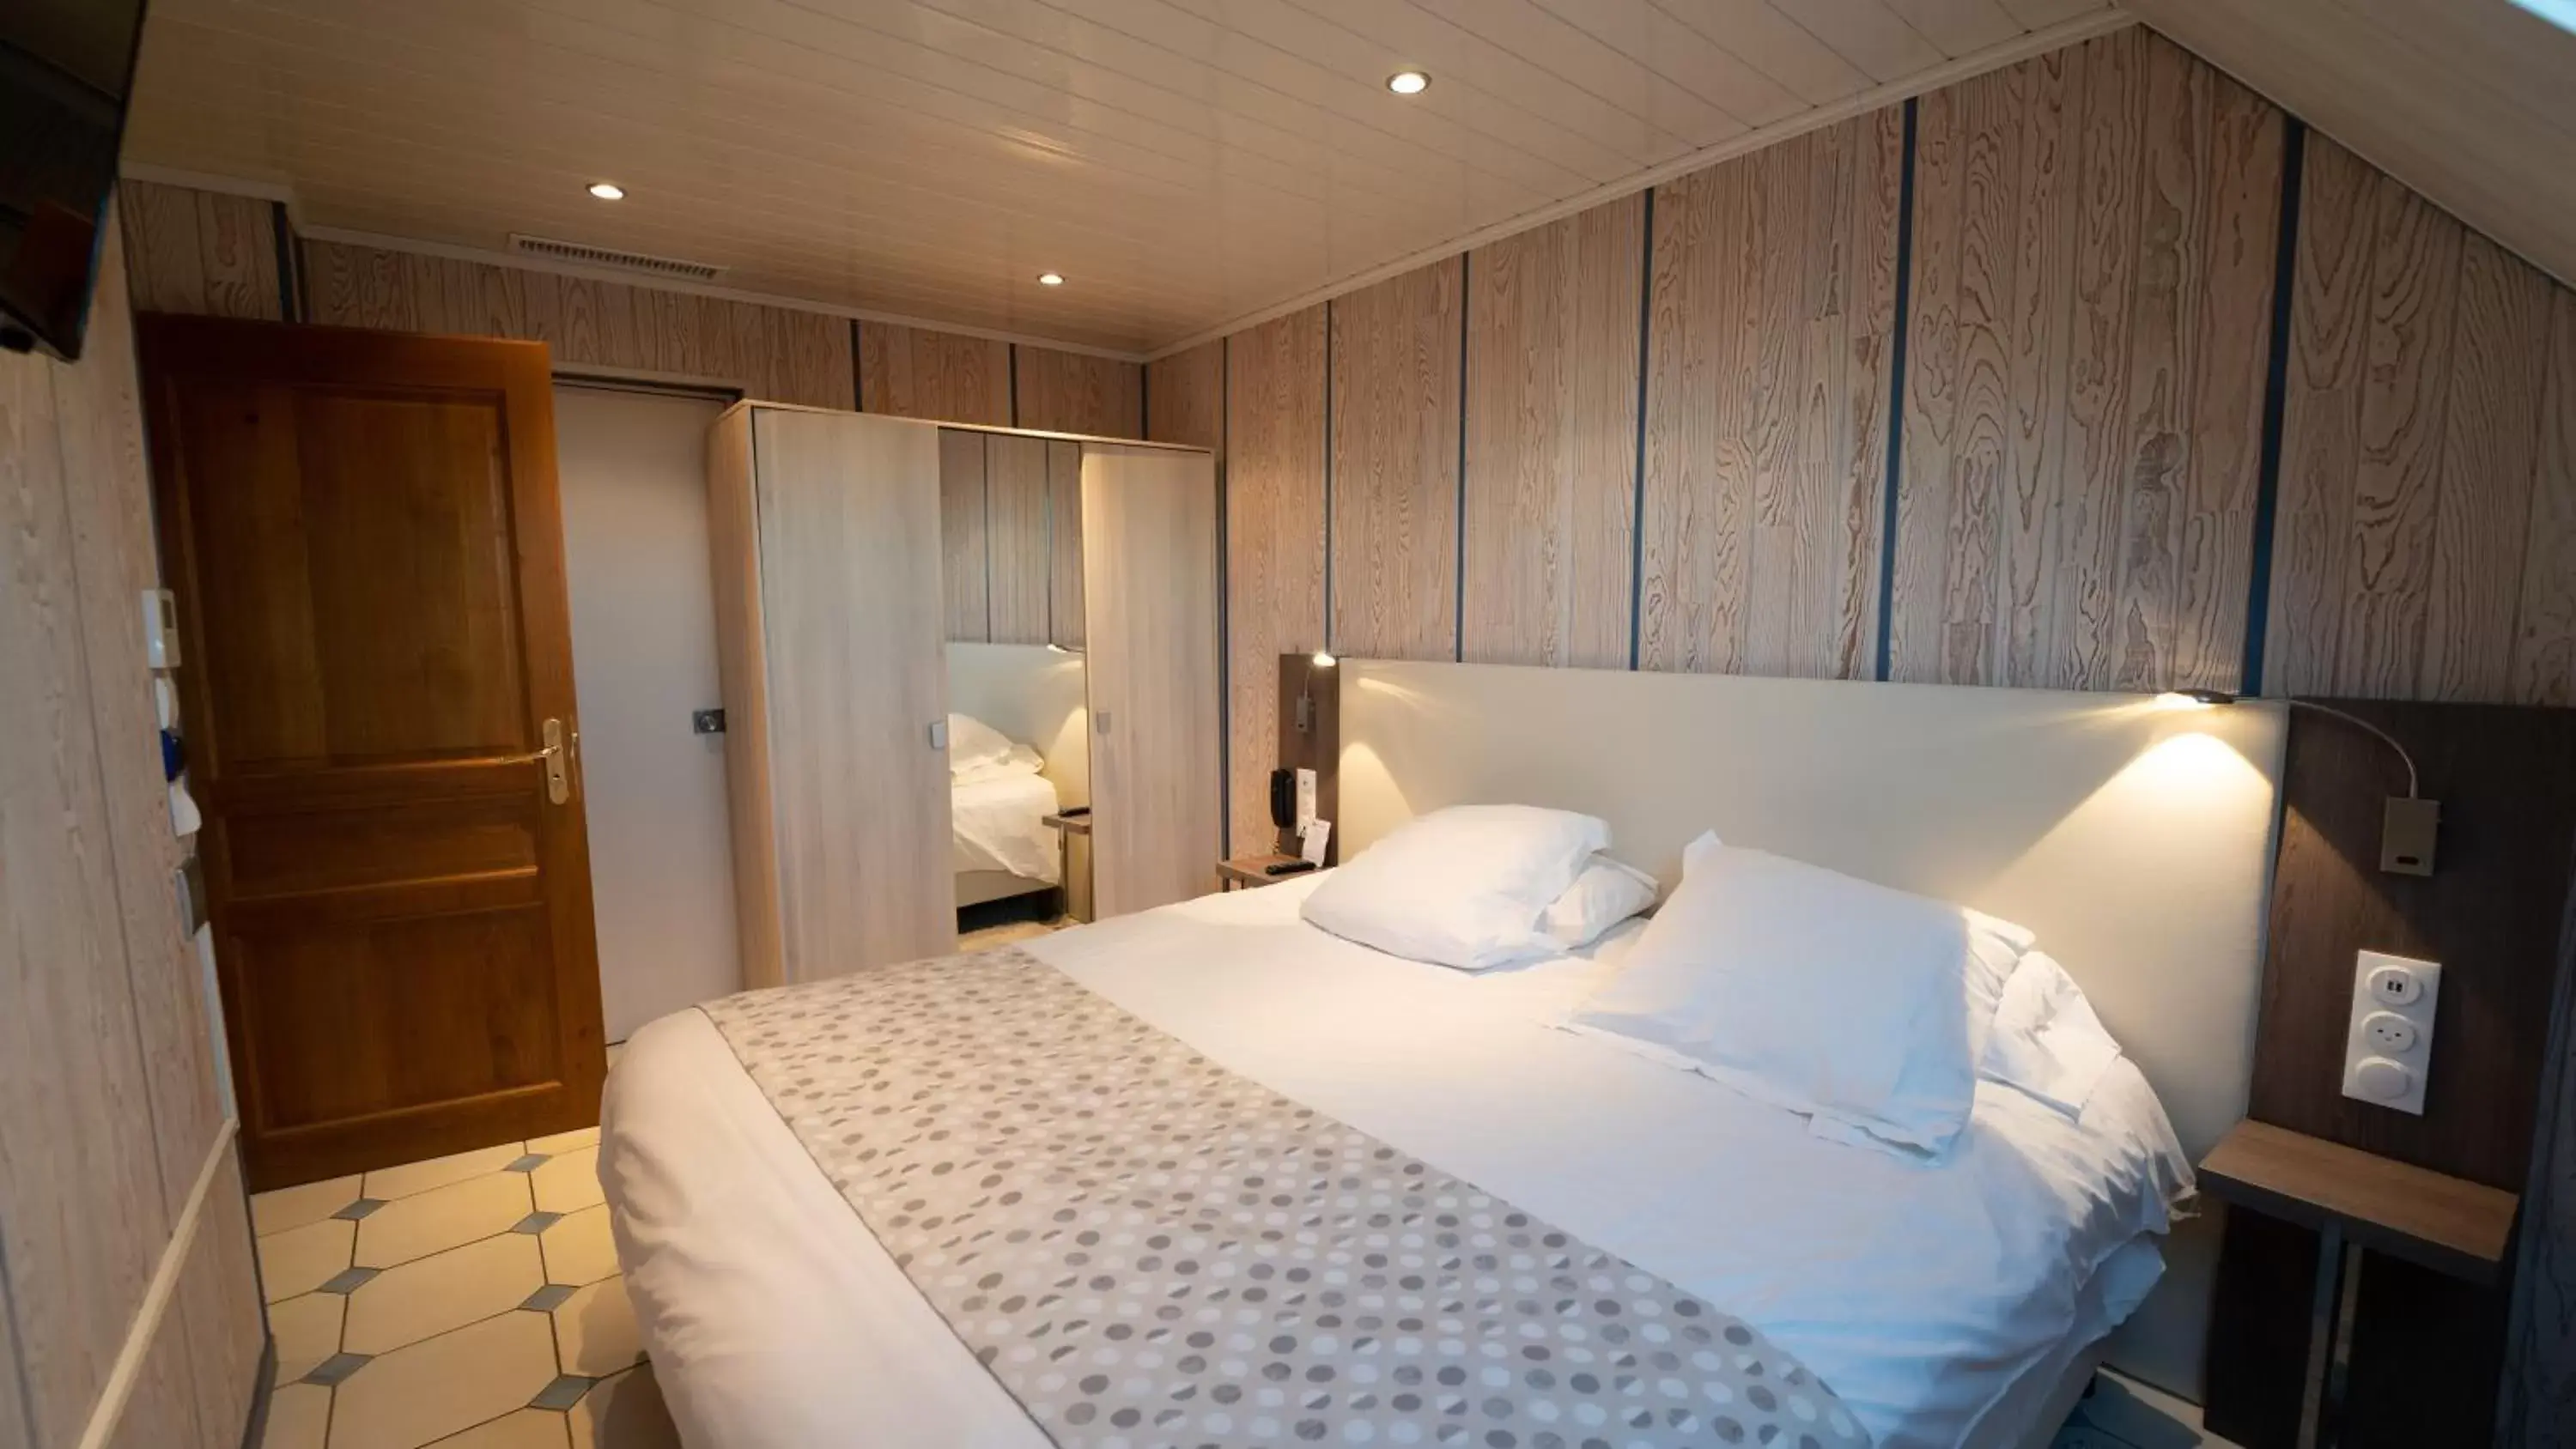 Bedroom, Bed in Best Western Hotel Ile de France